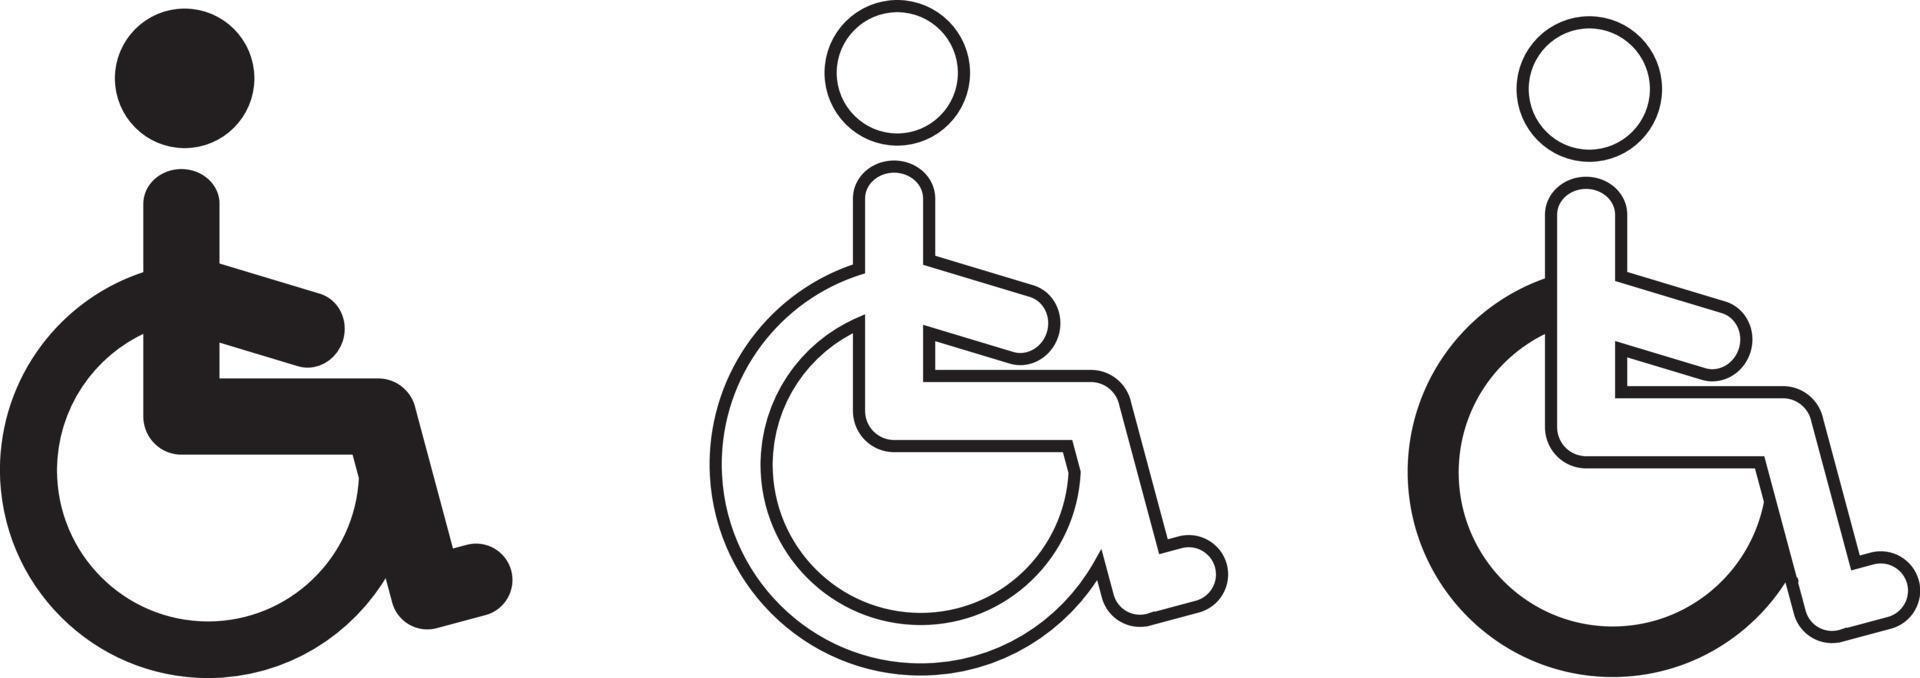 Rollstuhl-Symbol. Behindertensymbol. Rollstuhlsymbole gesetzt vektor